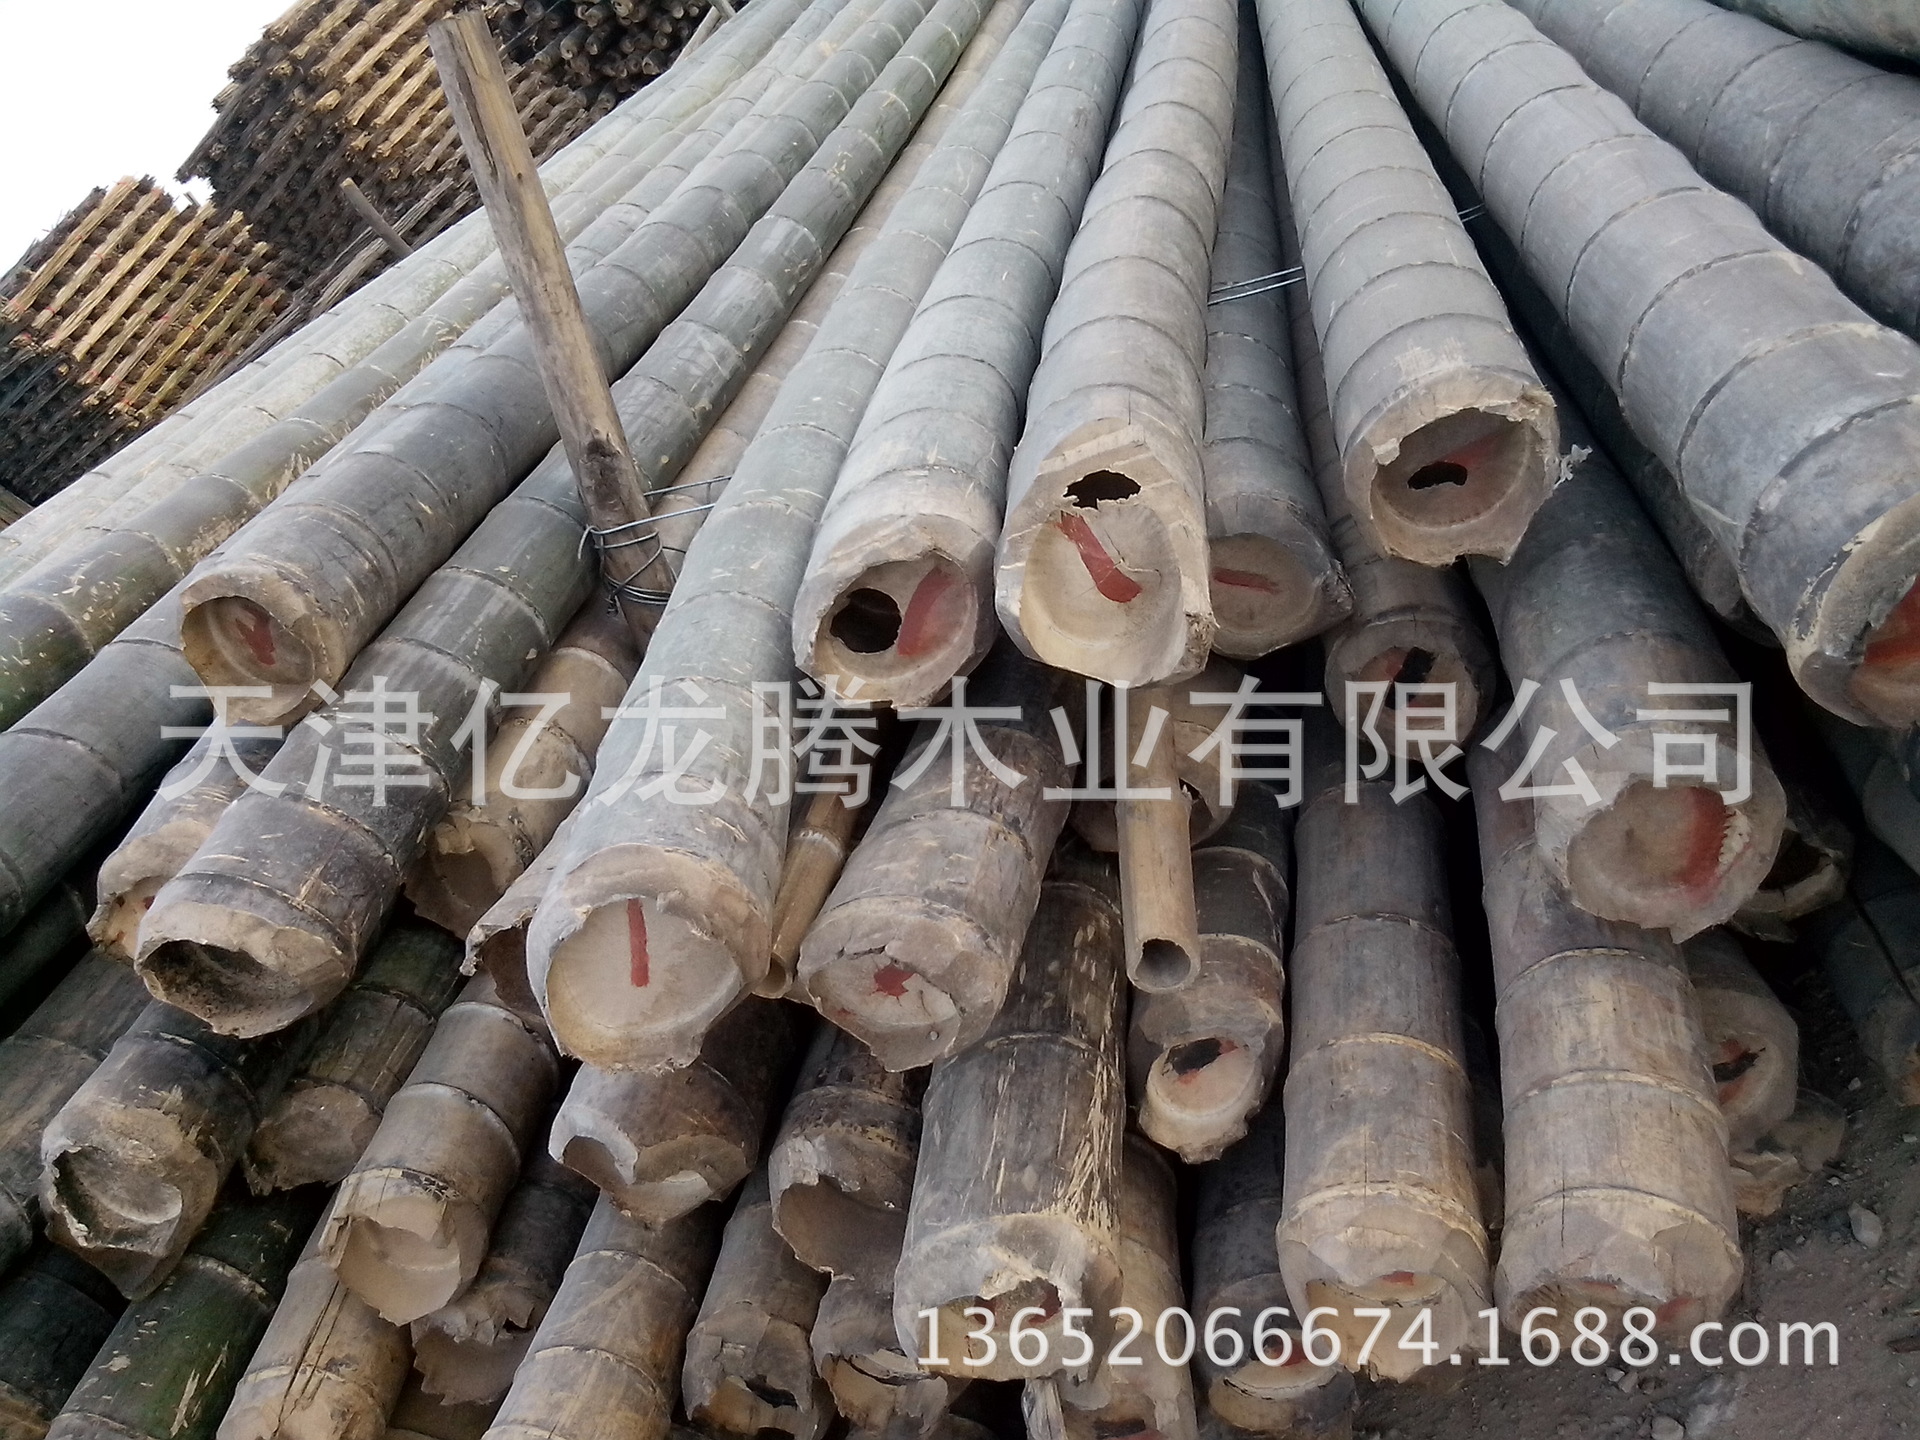 各种竹竿及杂竹的供应，包括置菜价竹、豆角架竹竿